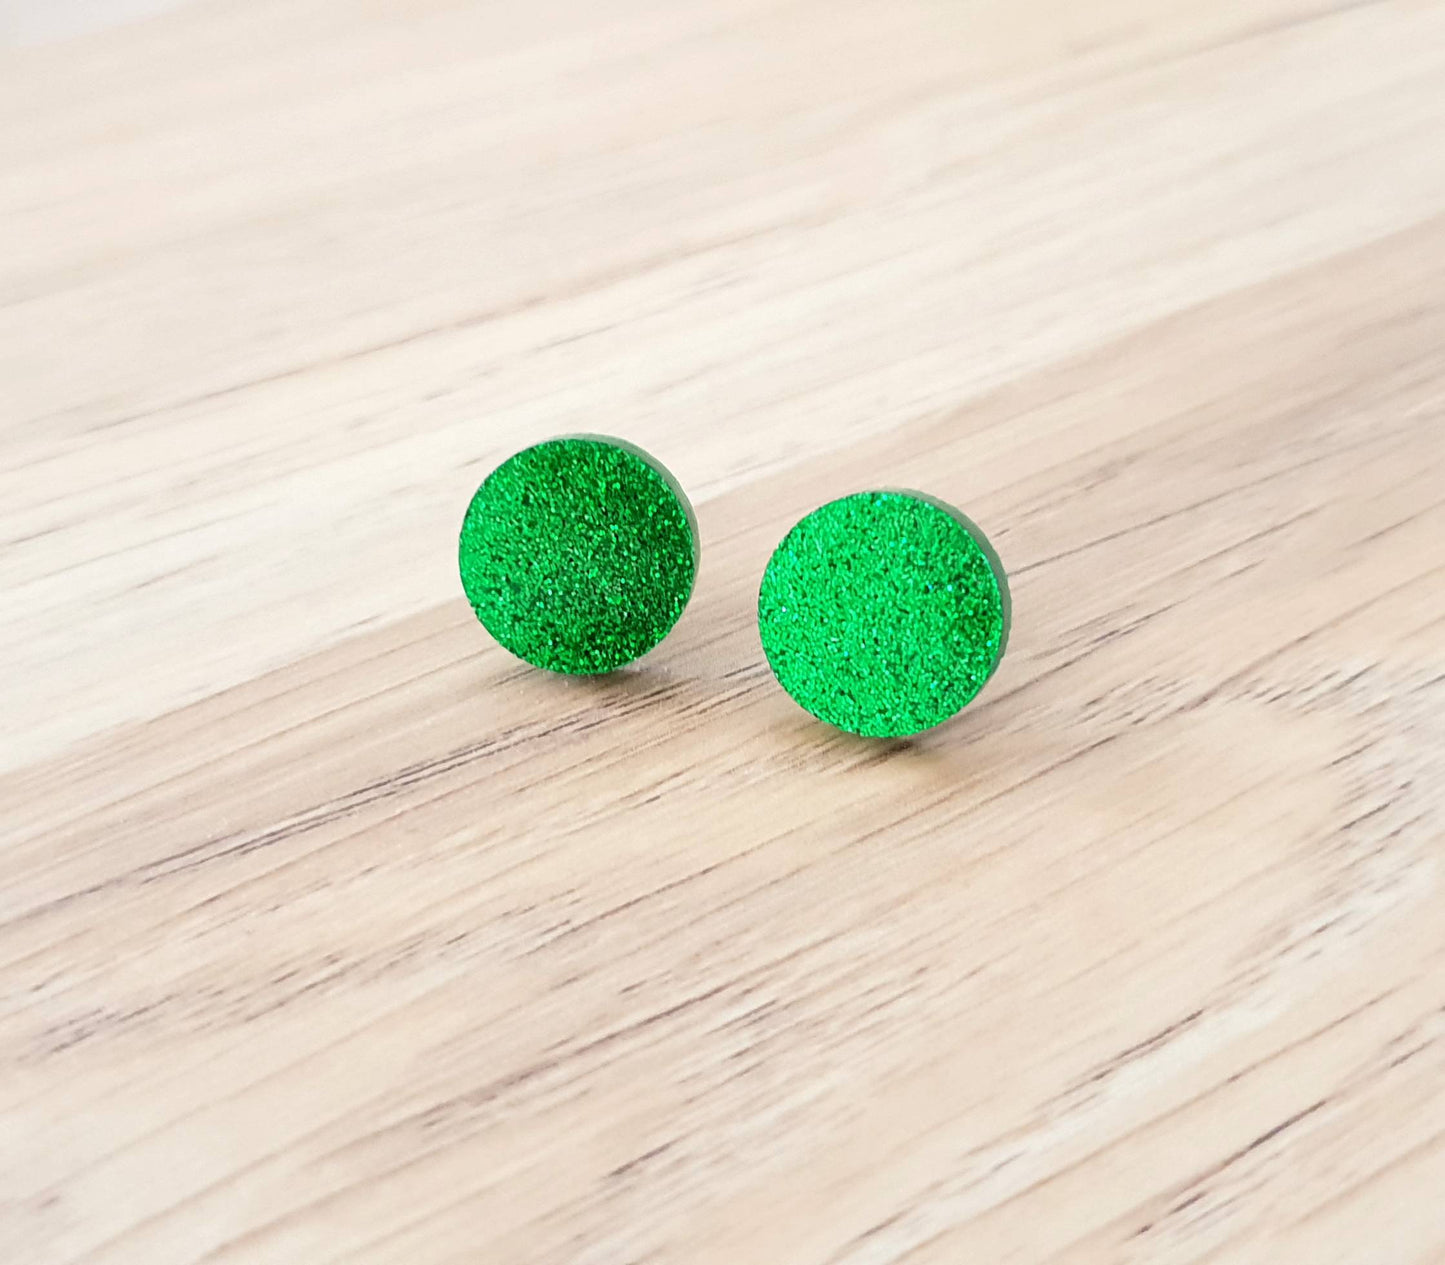 Grass Green Glitter Stud Earrings, Acrylic Earrings, Stainless Steel Earrings.